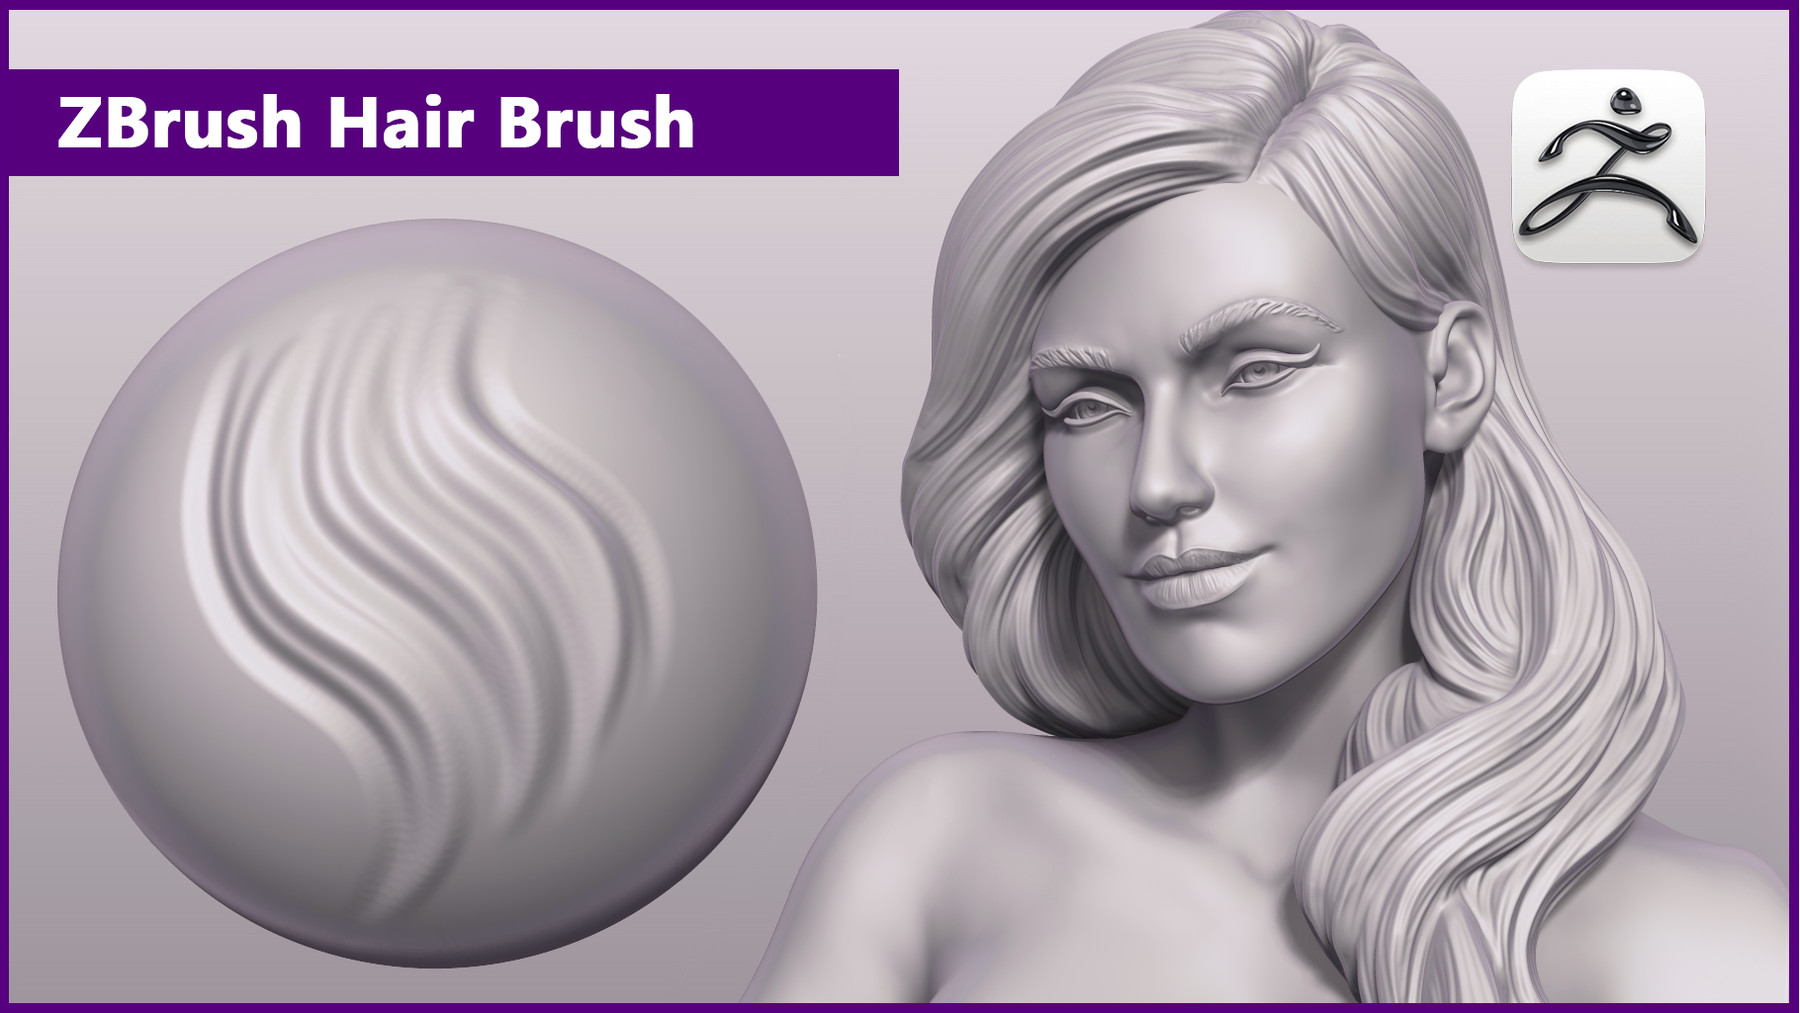 zbrush brush for hair